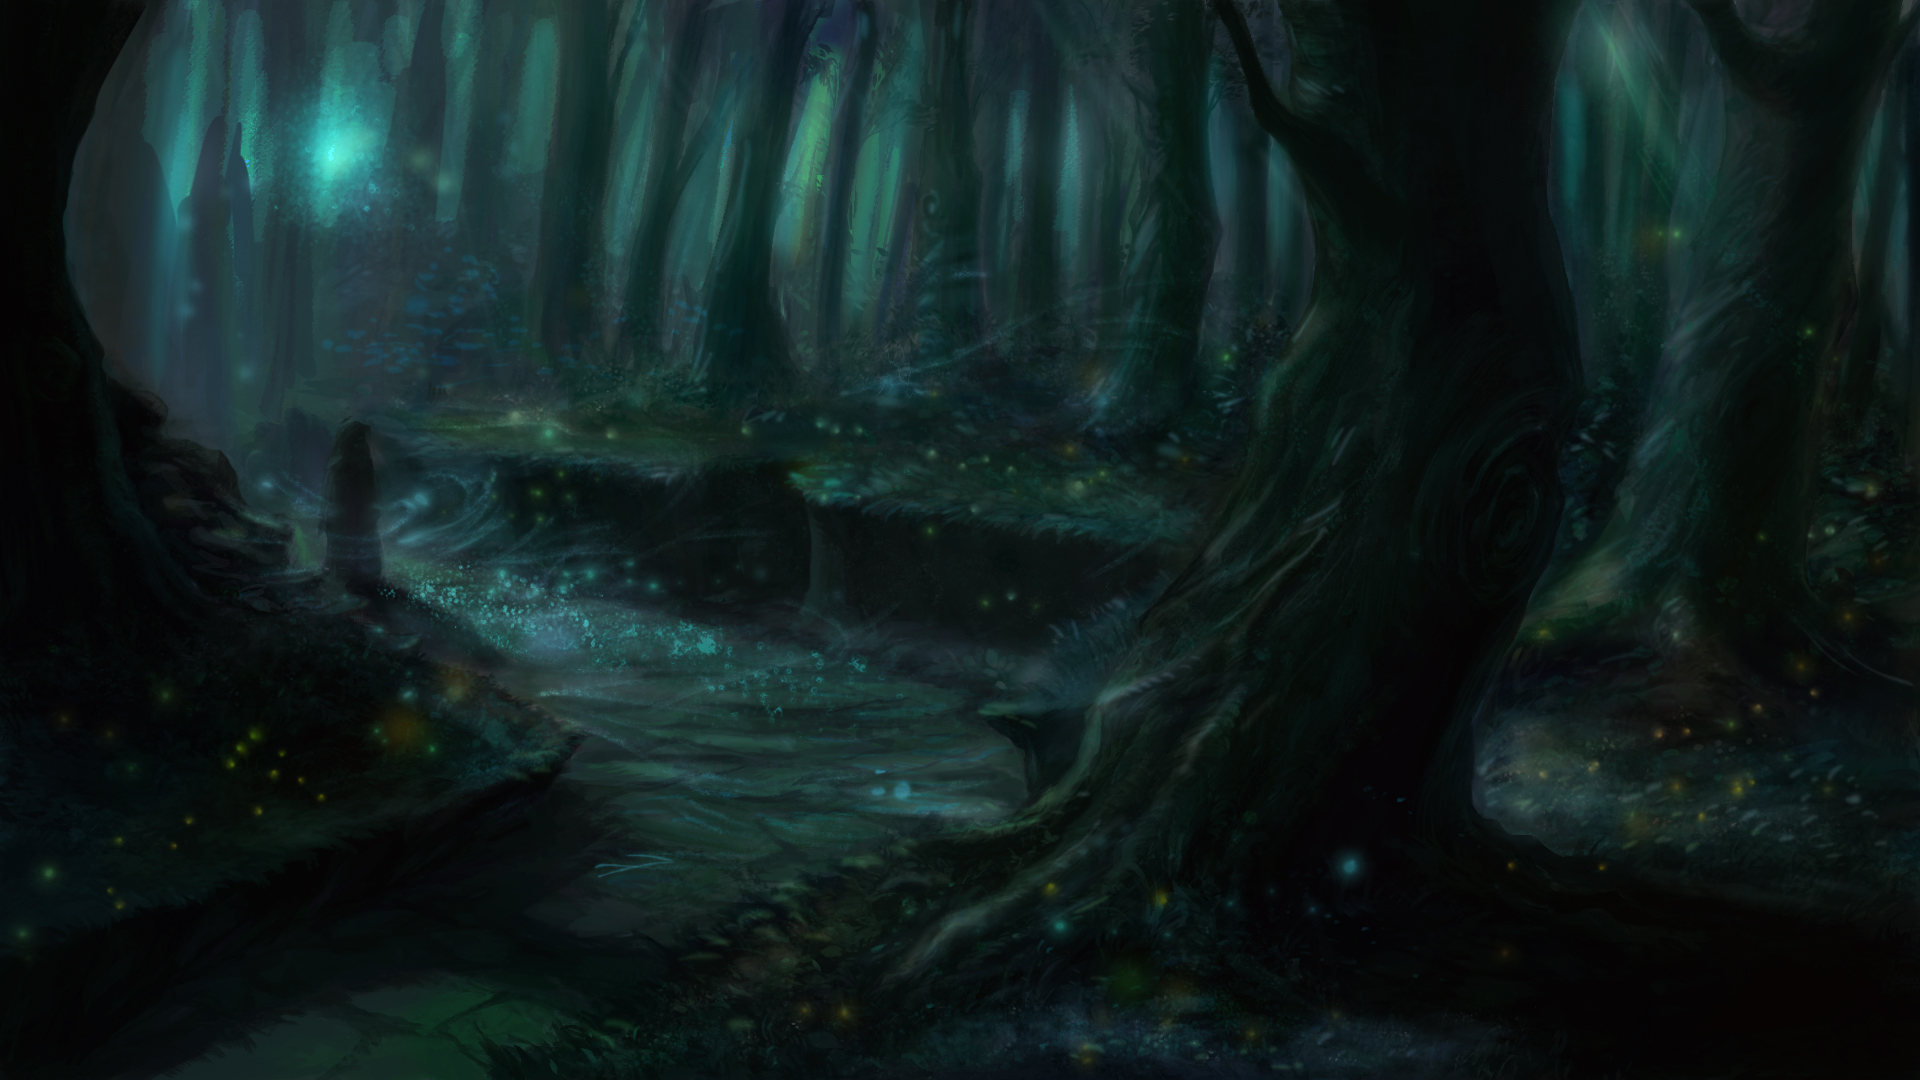 Hình nền anime rừng - Khám phá một thế giới kỳ diệu trong hình nền anime rừng đầy màu sắc và bí ẩn. Hãy ngắm nhìn cảnh vật tuyệt đẹp của rừng xanh tươi và những nhân vật anime lạ mắt, hứa hẹn sẽ đưa bạn đến với những chuyến phiêu lưu hấp dẫn.